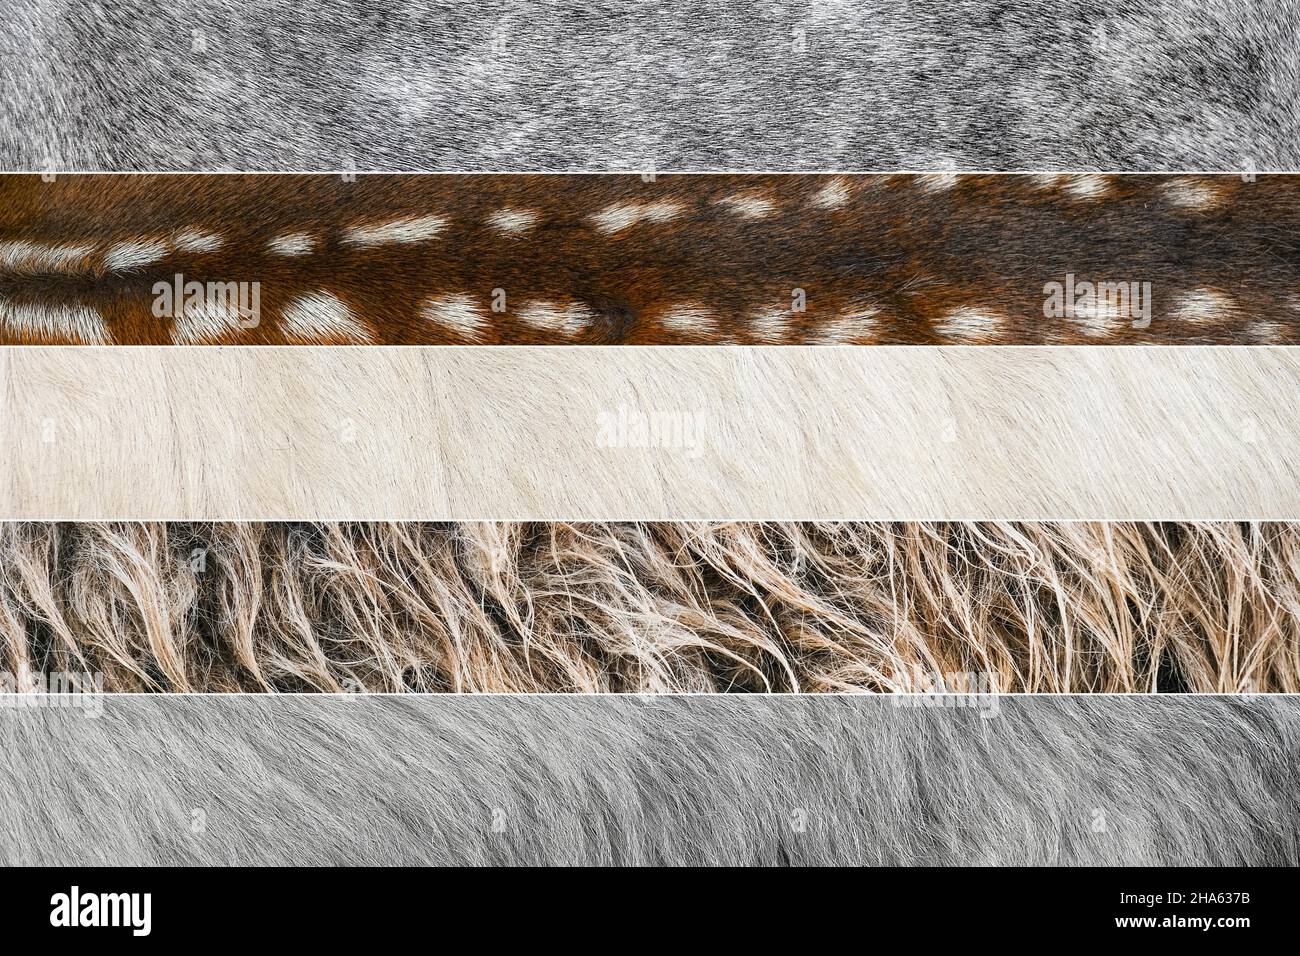 Collage de photos de laine et de fourrure de différents animaux.Vache, mouton, chèvre, cheval, âne animaux peau et fourrure gros plan Banque D'Images